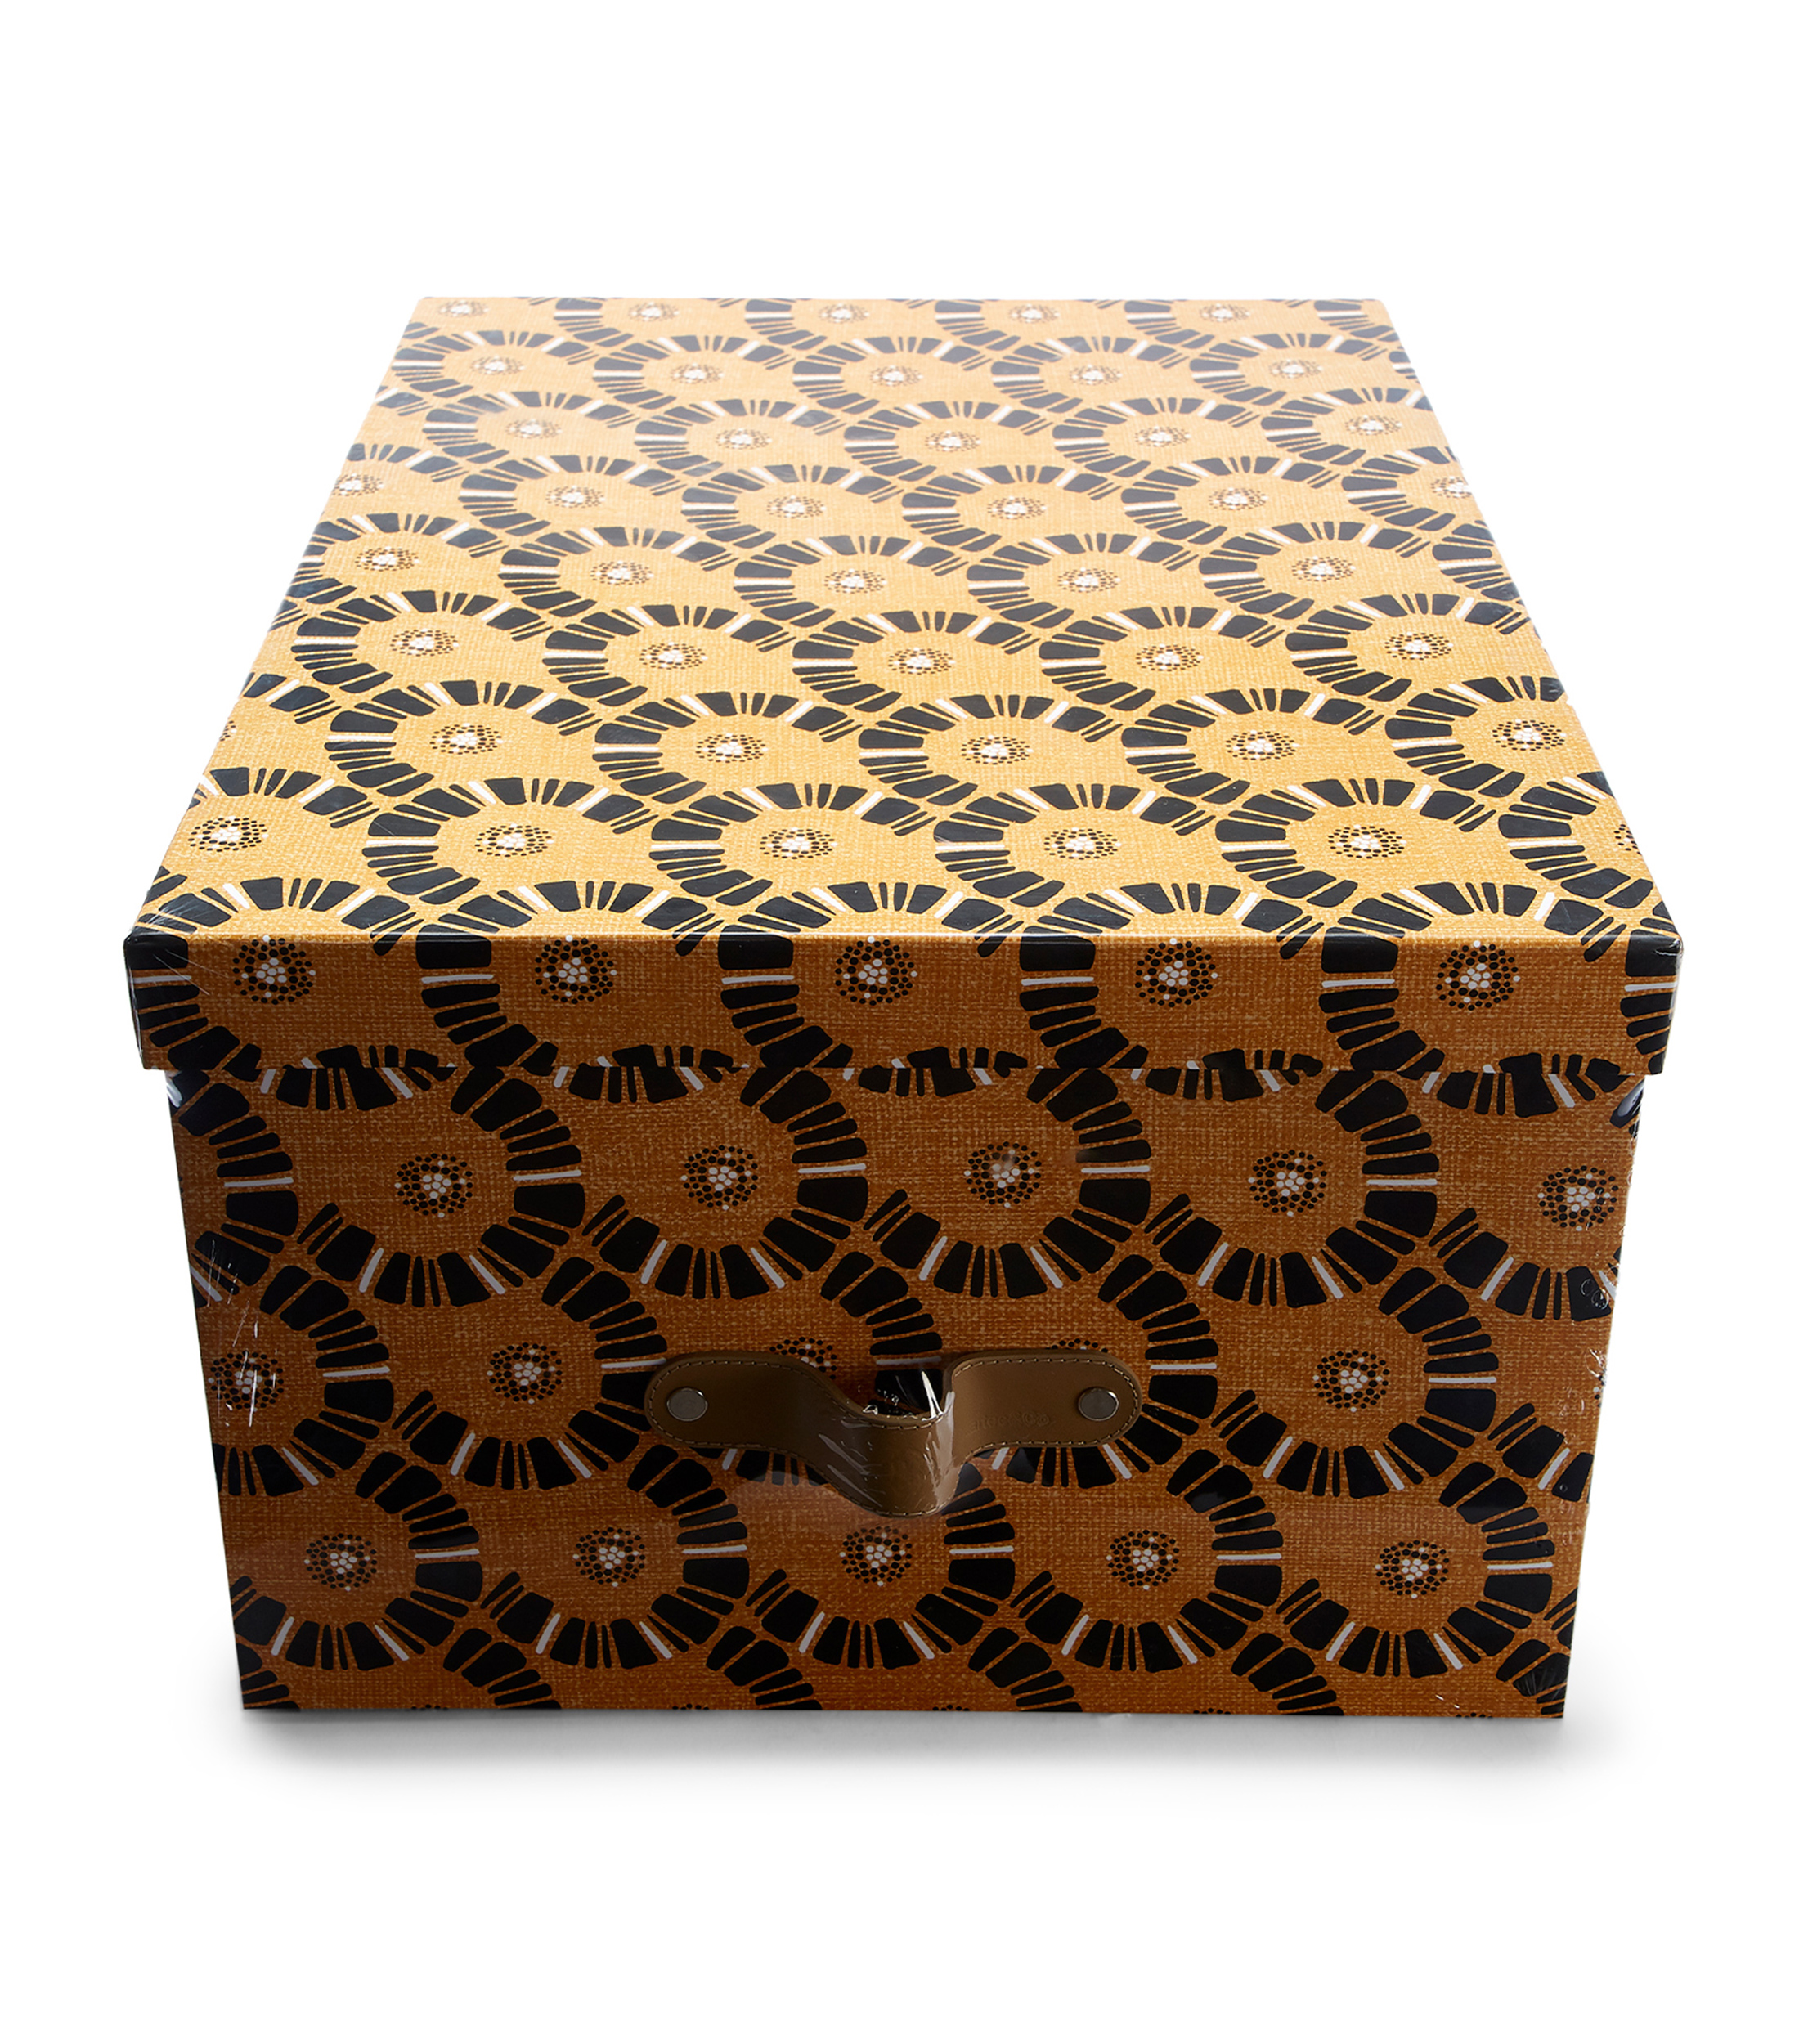 Duartee&Co Caja Decorativa en cartón - El Palacio de Hierro